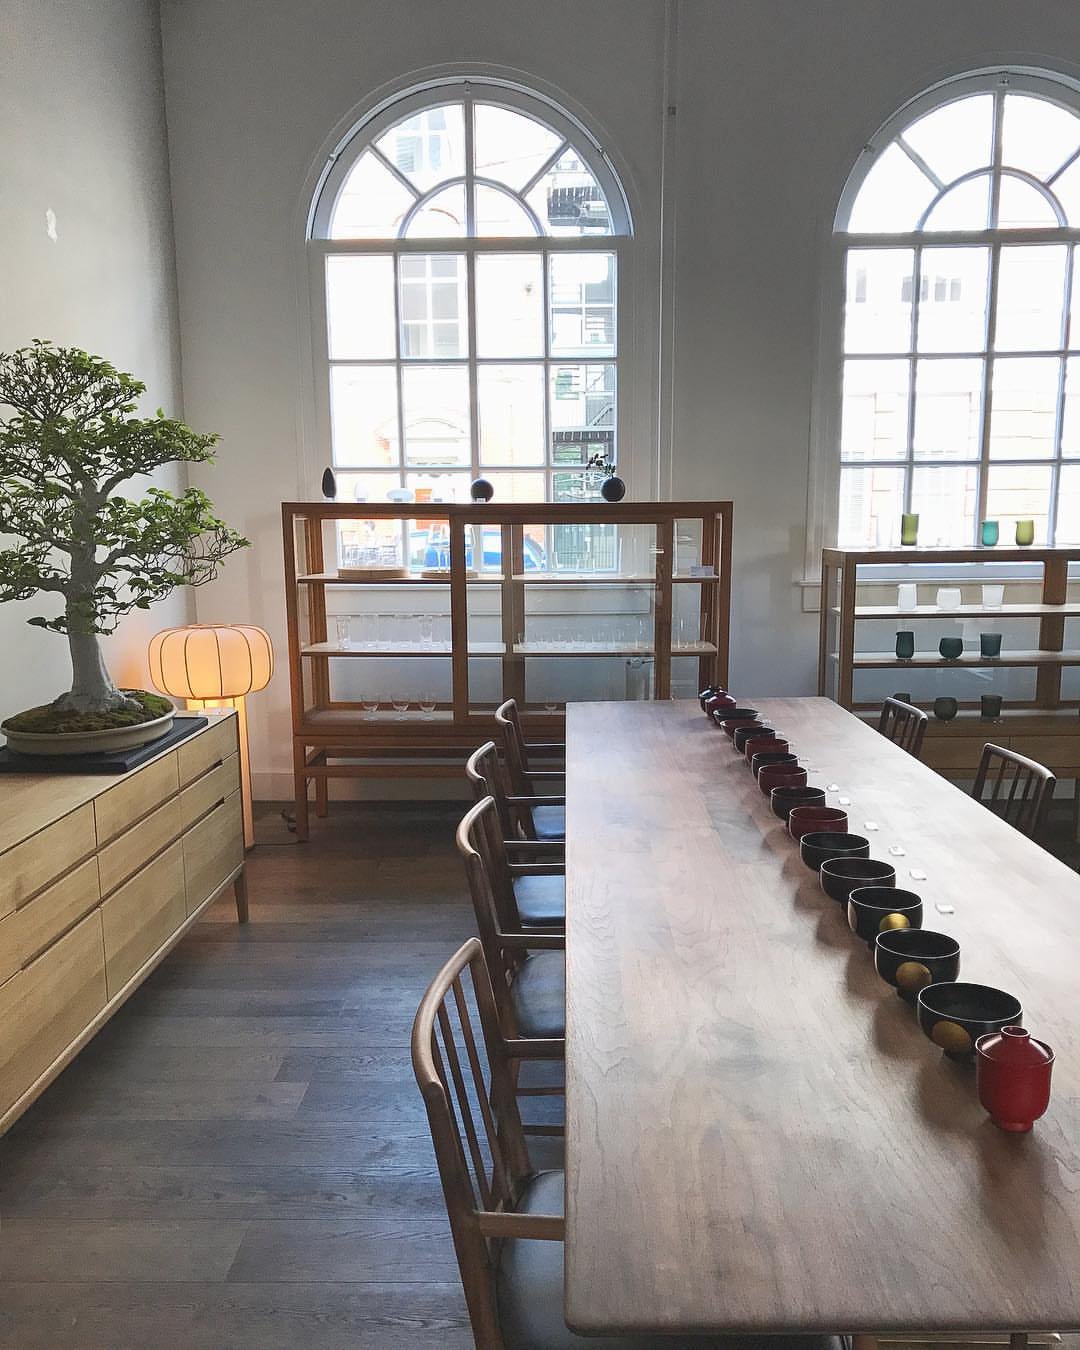 Tienda en Amsterdam de mobiliario moderno Time & Style creada por Kengo Kuma sillas bonsai mesa de madera